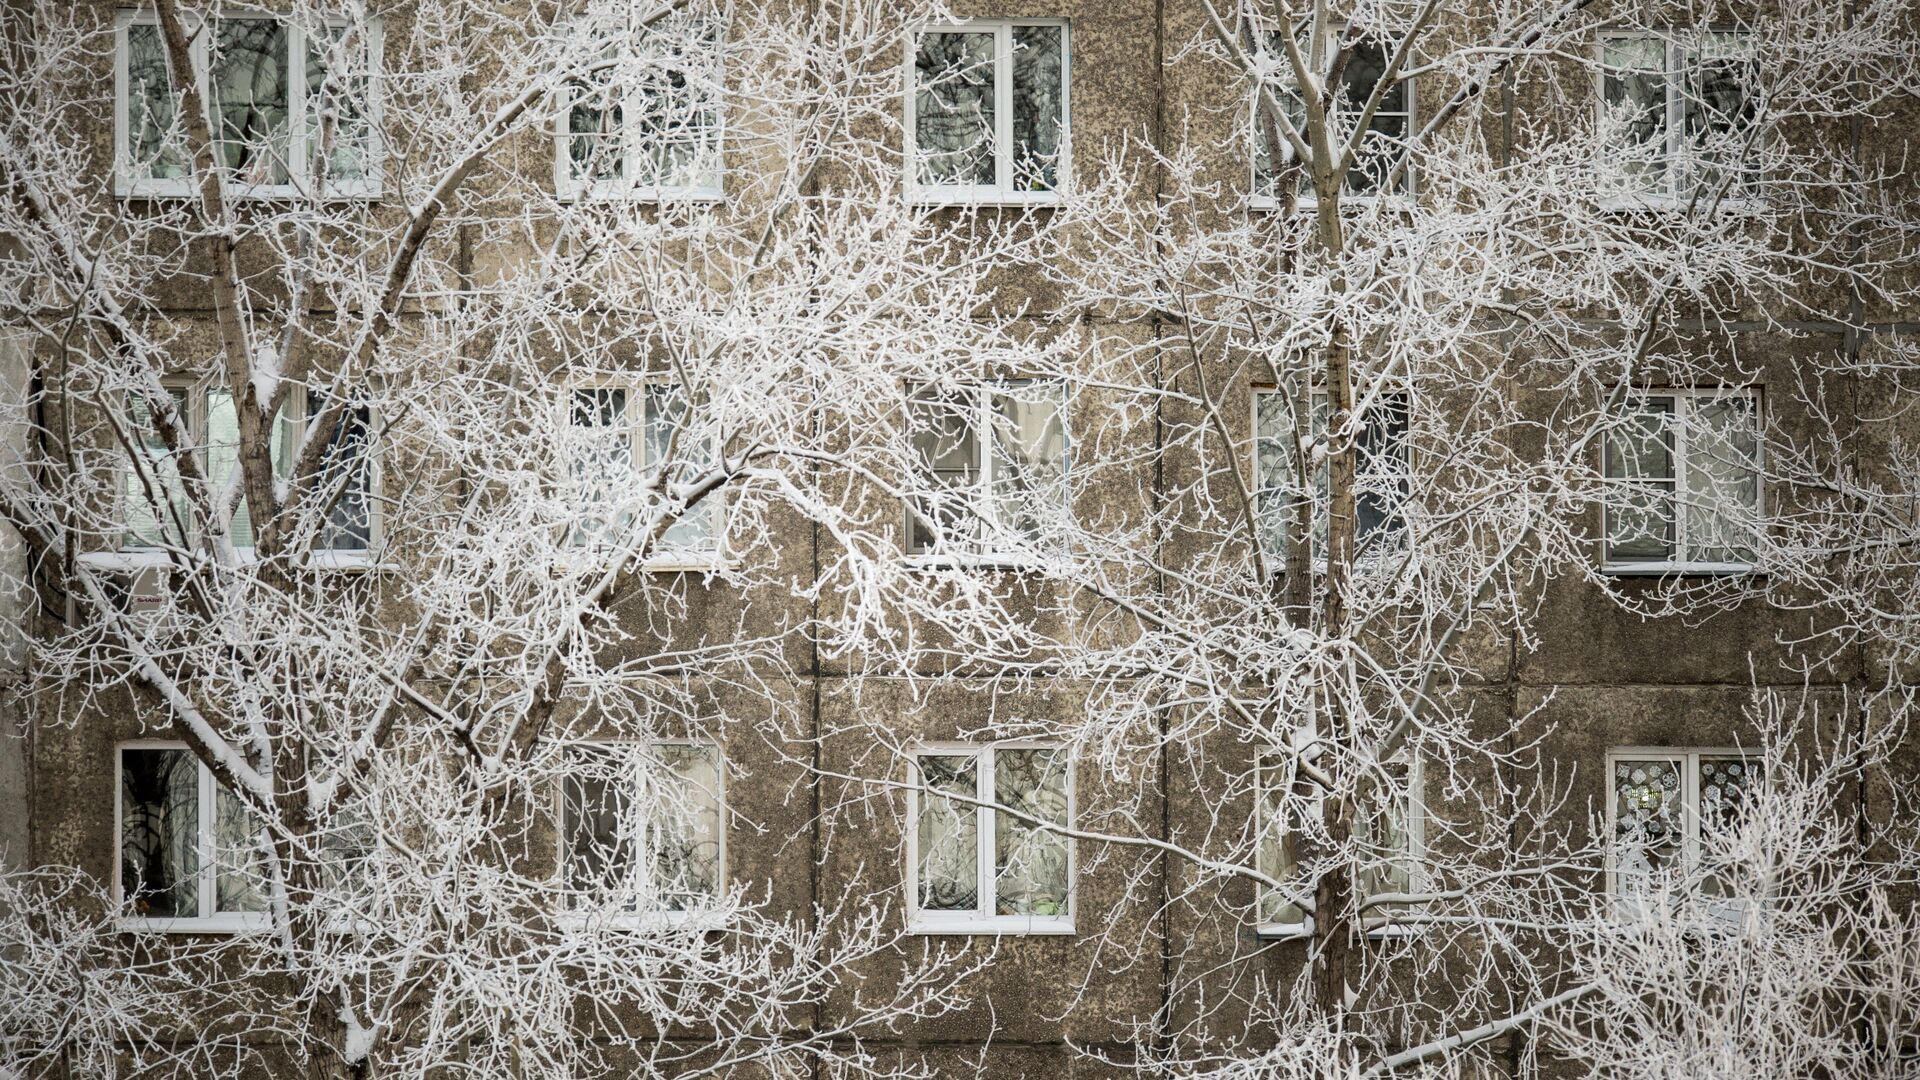 Покрытые инеем ветки деревьев у жилого дома - РИА Новости, 1920, 09.03.2021